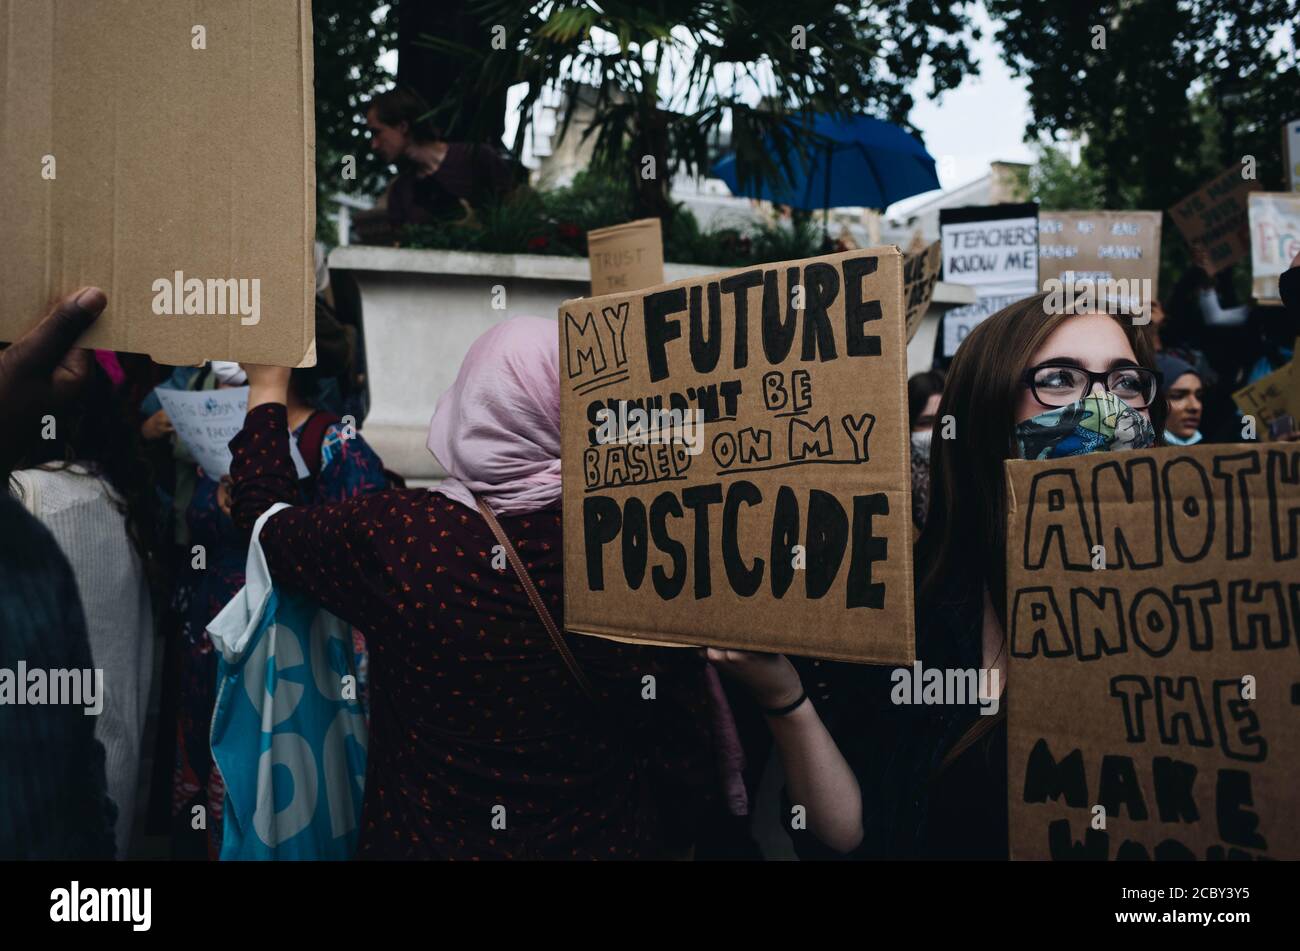 Westminster, Londres, Royaume-Uni. 16 août 2020. Les étudiants protestent contre la rétrogradation d'UN niveau, à Downing Street Banque D'Images